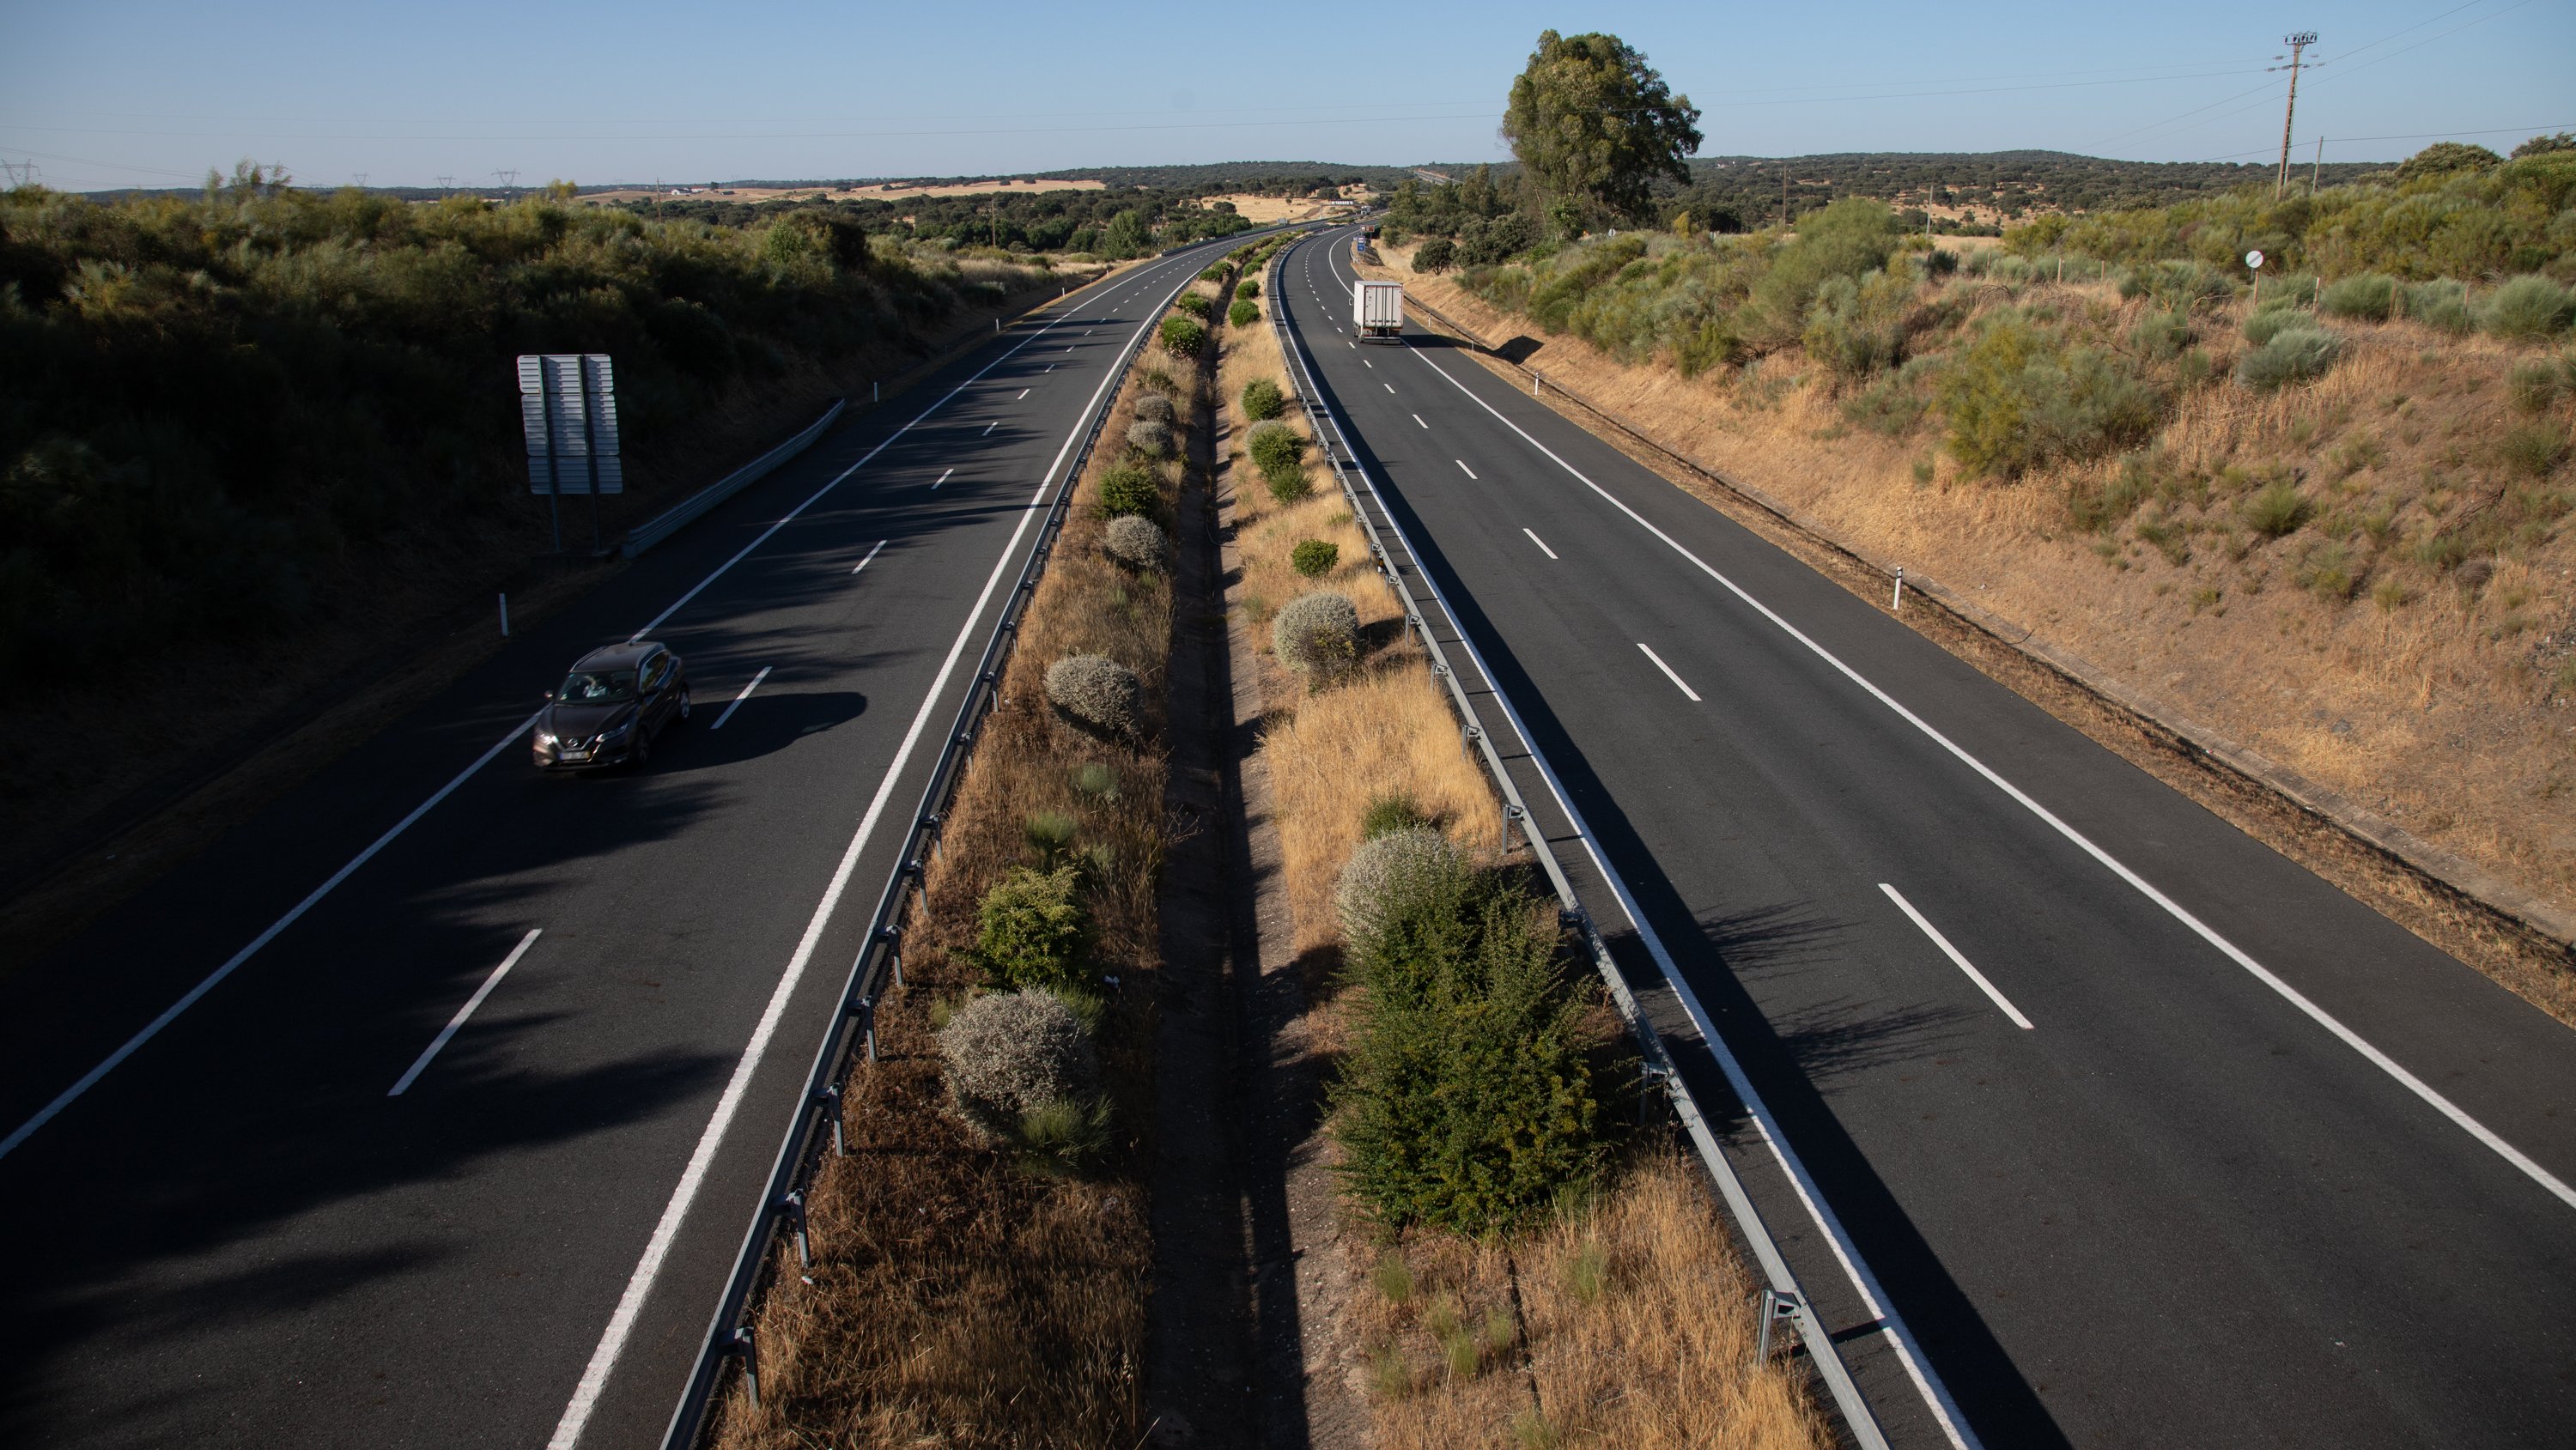 O acidente aconteceu no dia 18 de junho, ao quilómetro 77,6 da A6, perto da Azaruja, em Évora, no sentido Estremoz-Lisboa